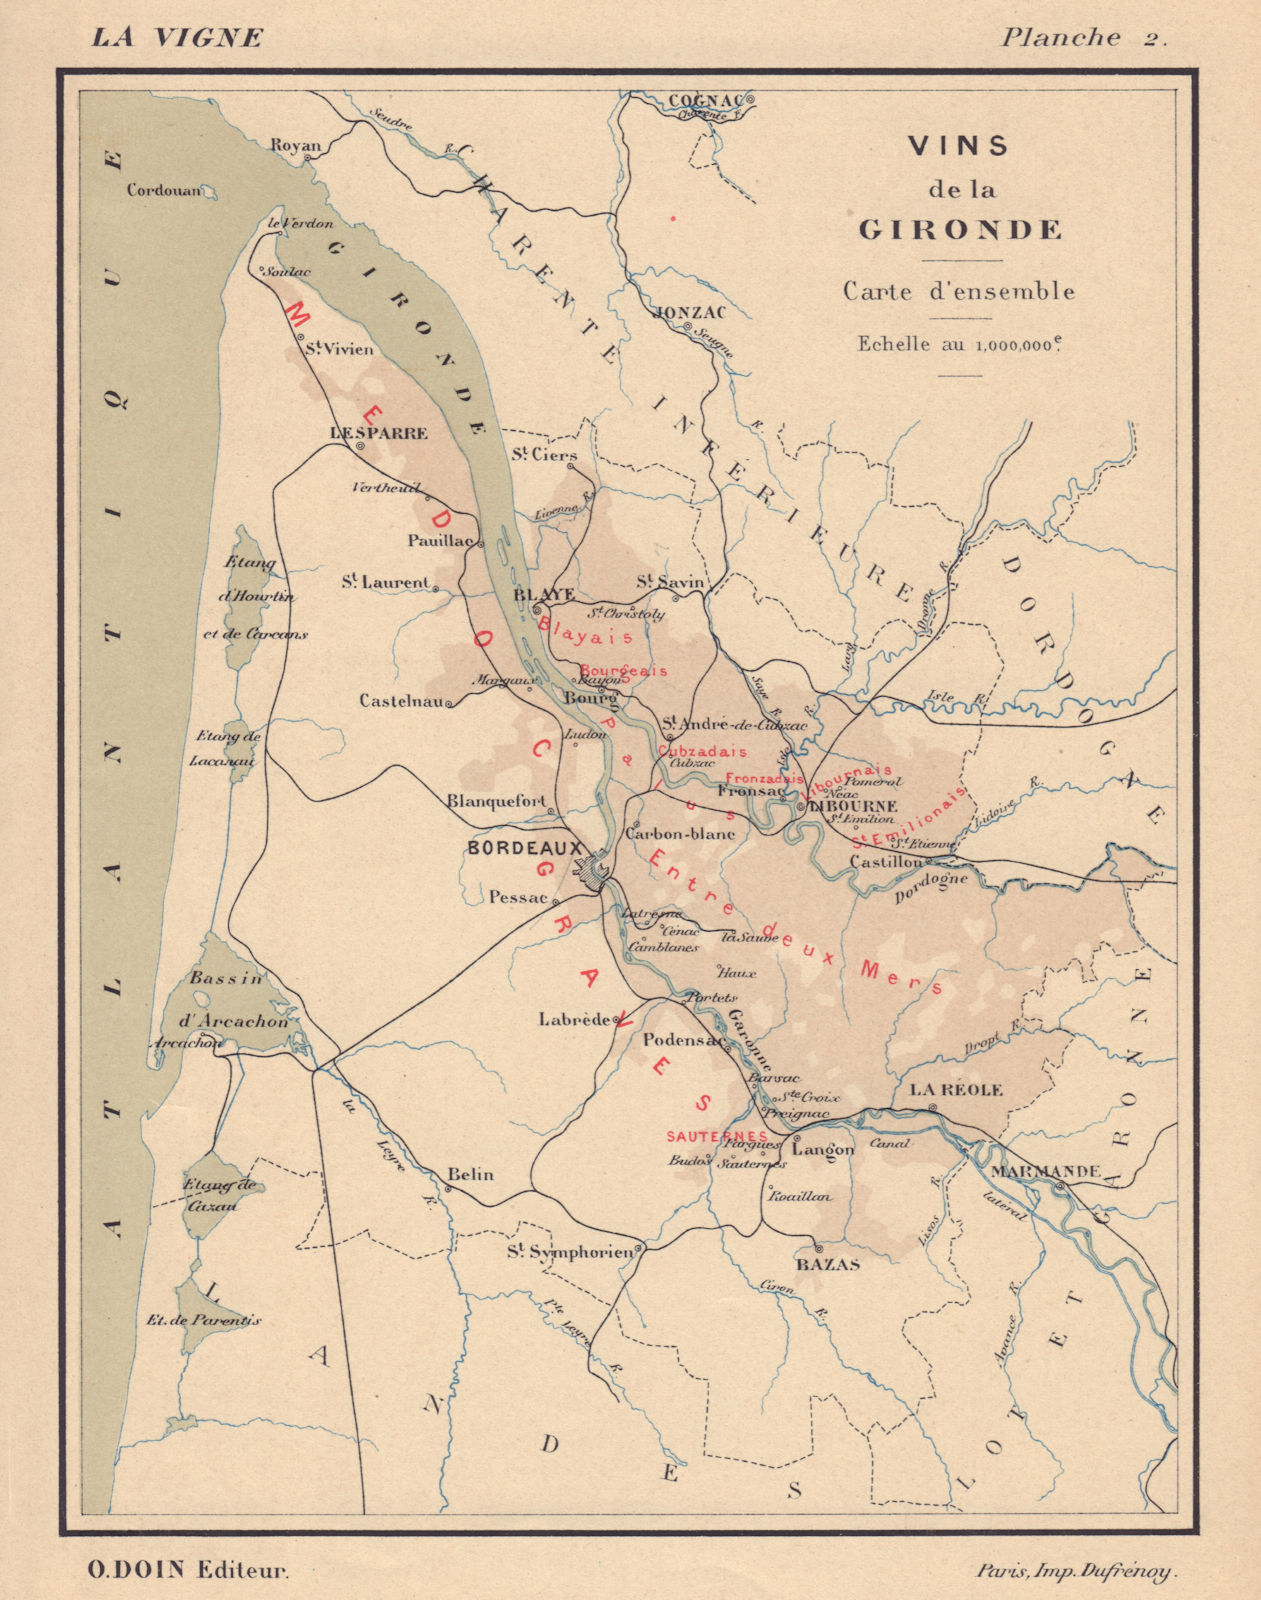 Vins de la Gironde - Carte d'ensemble. Bordeaux wine map. HAUSERMANN 1901